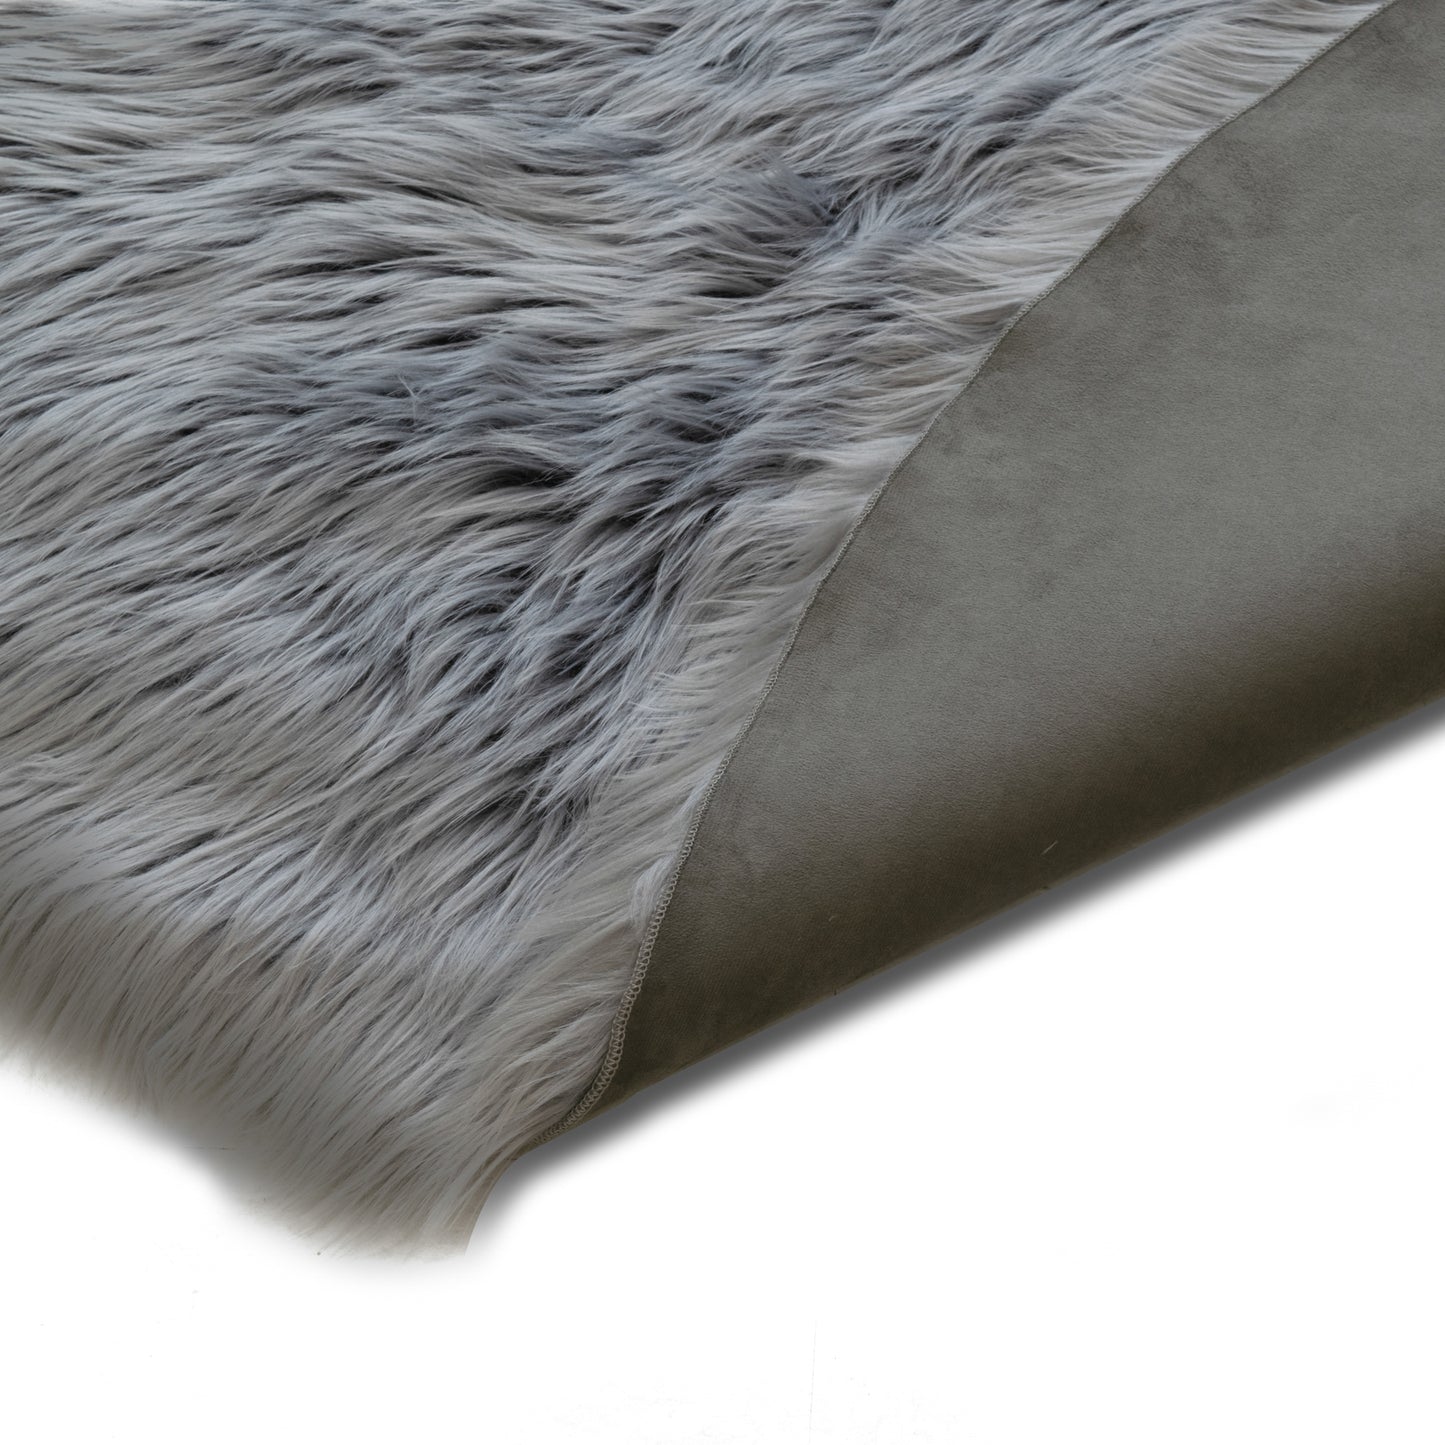 Ailsa Faux Sheepskin Fur Area Rug Runner Sheepskin-like Shape Grey 7x5